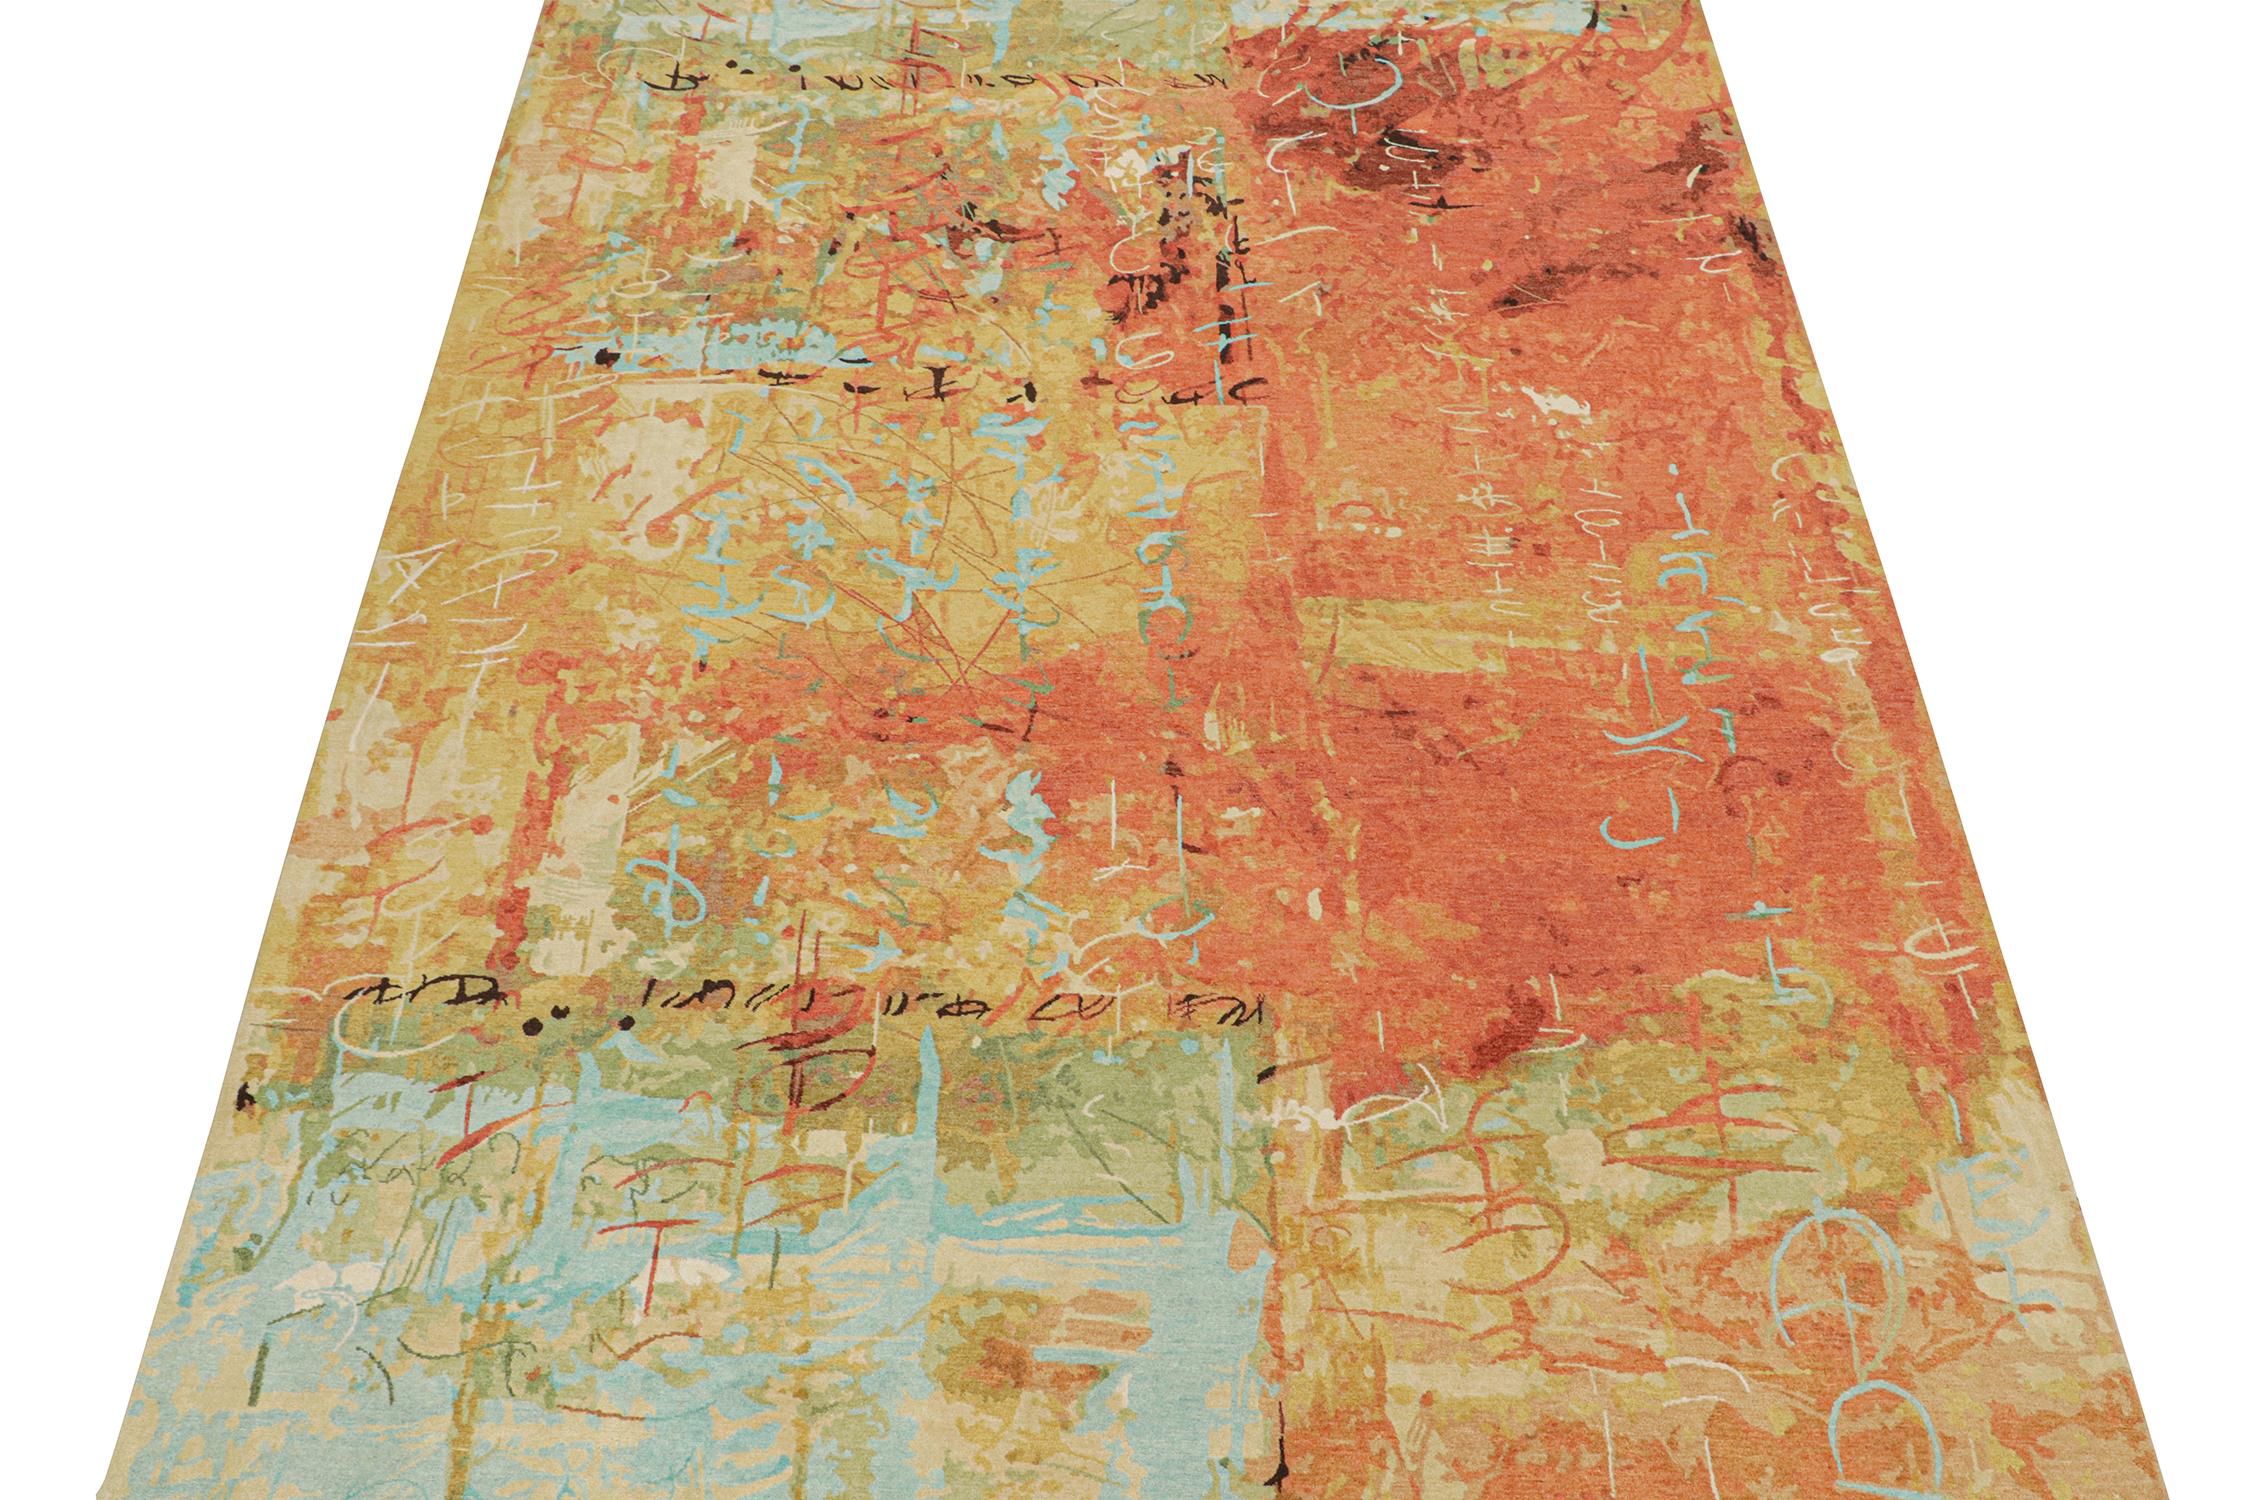 Dieser abstrakte Teppich im Format 9x12 ist eine kühne Ergänzung der Modern-Teppichkollektion von Rug & Kilim. Das aus Wolle und Seide handgeknüpfte Design ist ein Ausdruck expressionistischer Empfindsamkeit in außergewöhnlicher